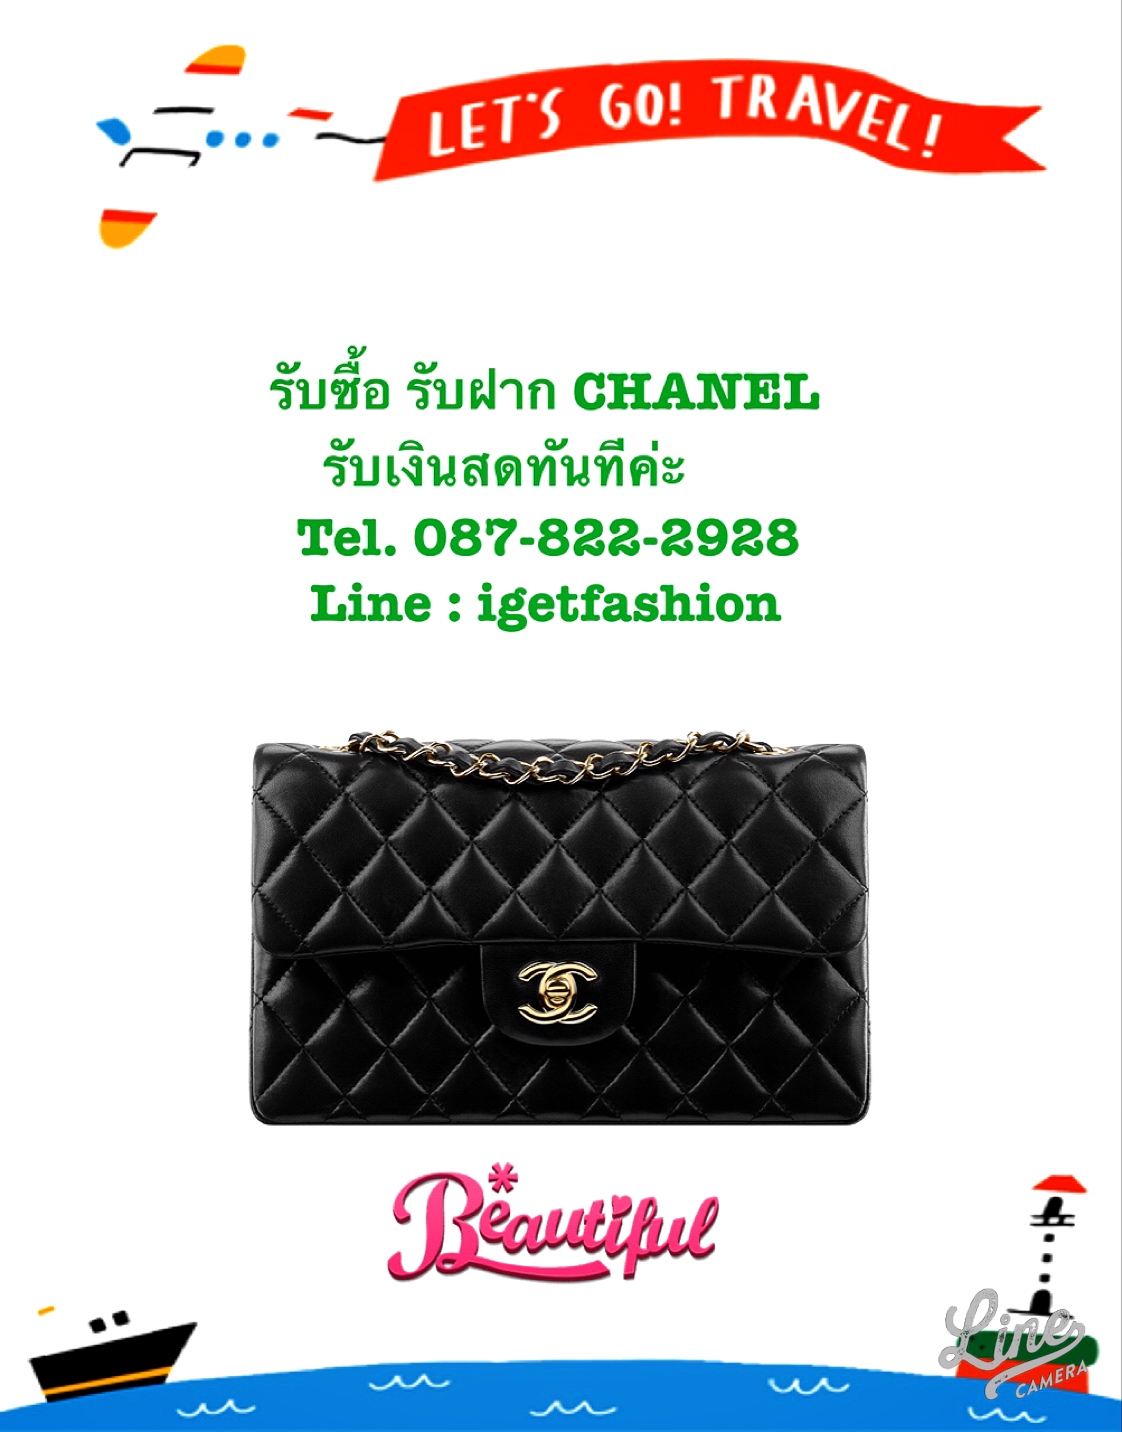 รับซื้อกระเป๋า Chanel ของแท้สภาพดี รับเงินทันที ส่งรูปมาก่อนได้ค่ะ Line : igetfashion รูปที่ 1